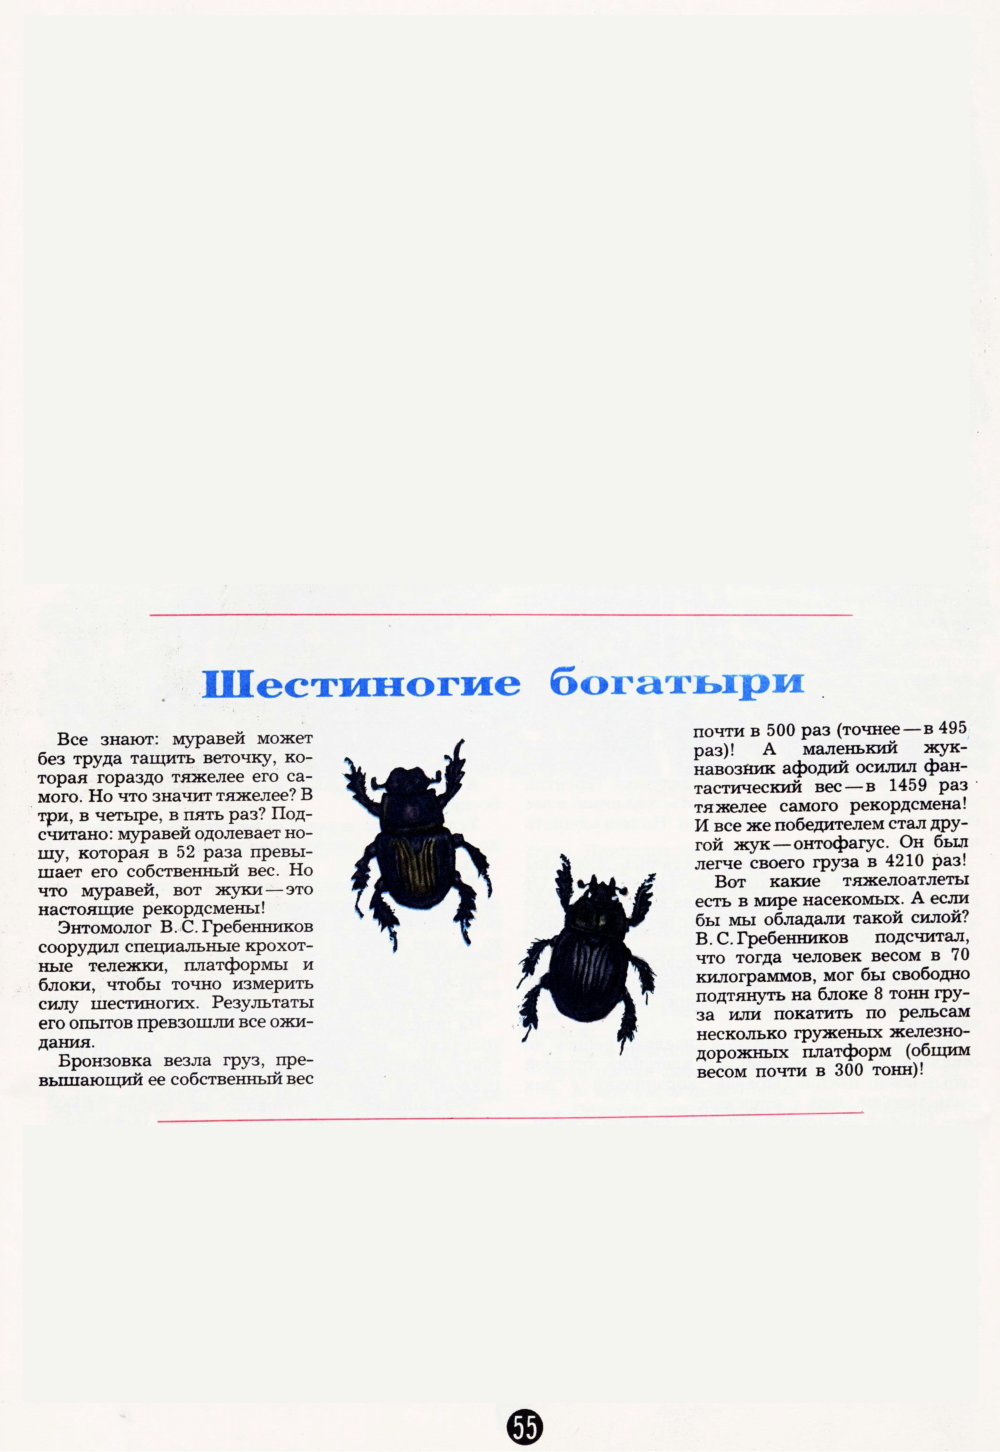 Шестиногие богатыри. В.С. Гребенников. Пионер, 1983, №8, с.55. Фотокопия